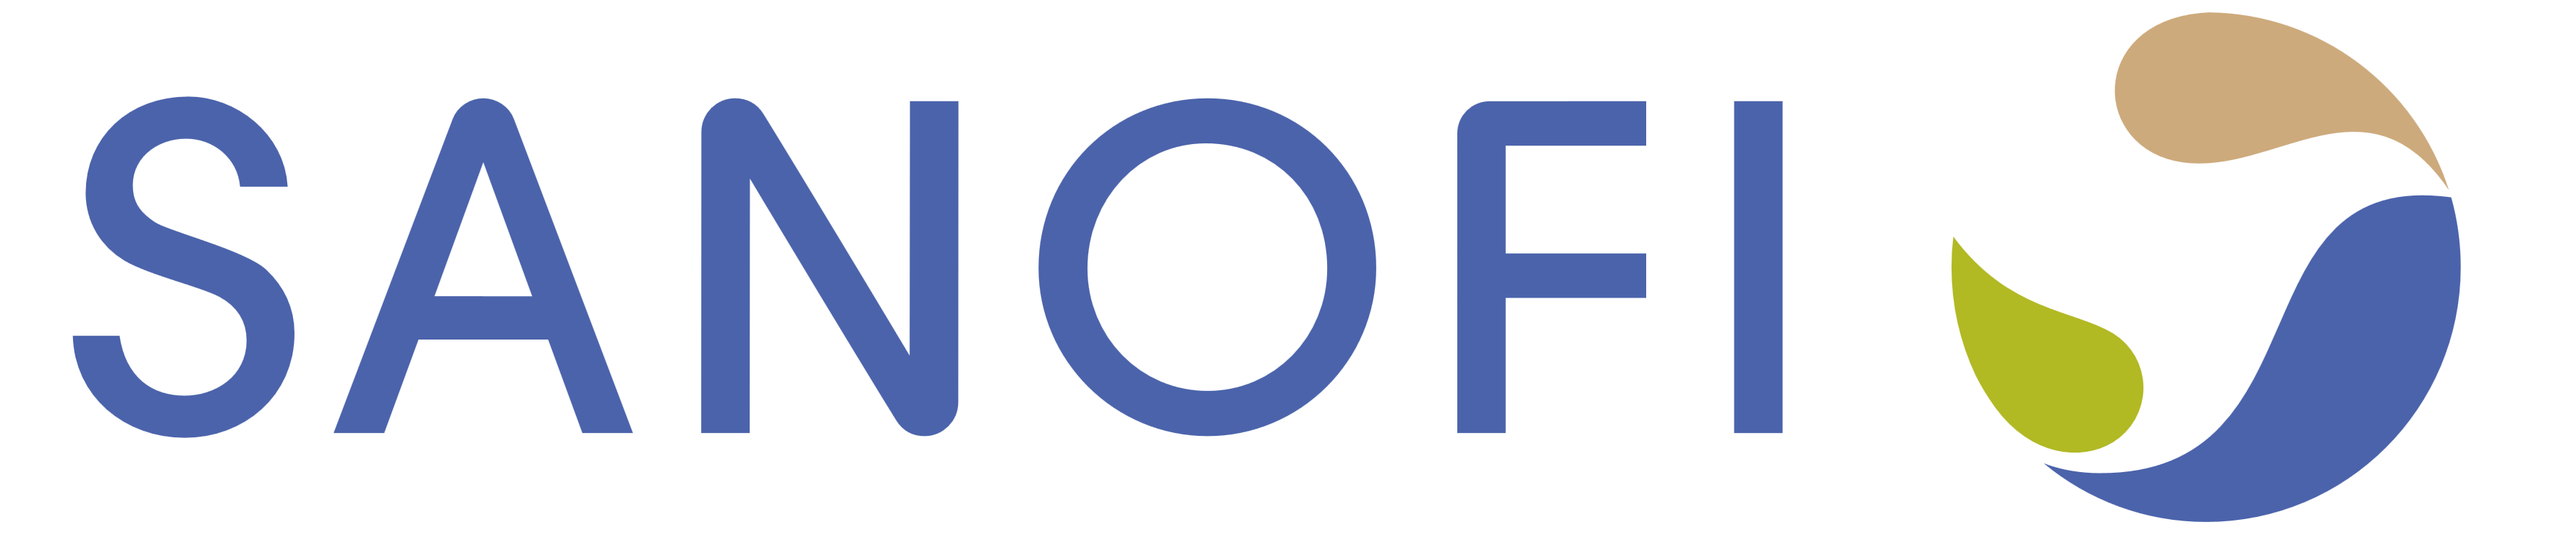 Sanofi logo horizontal